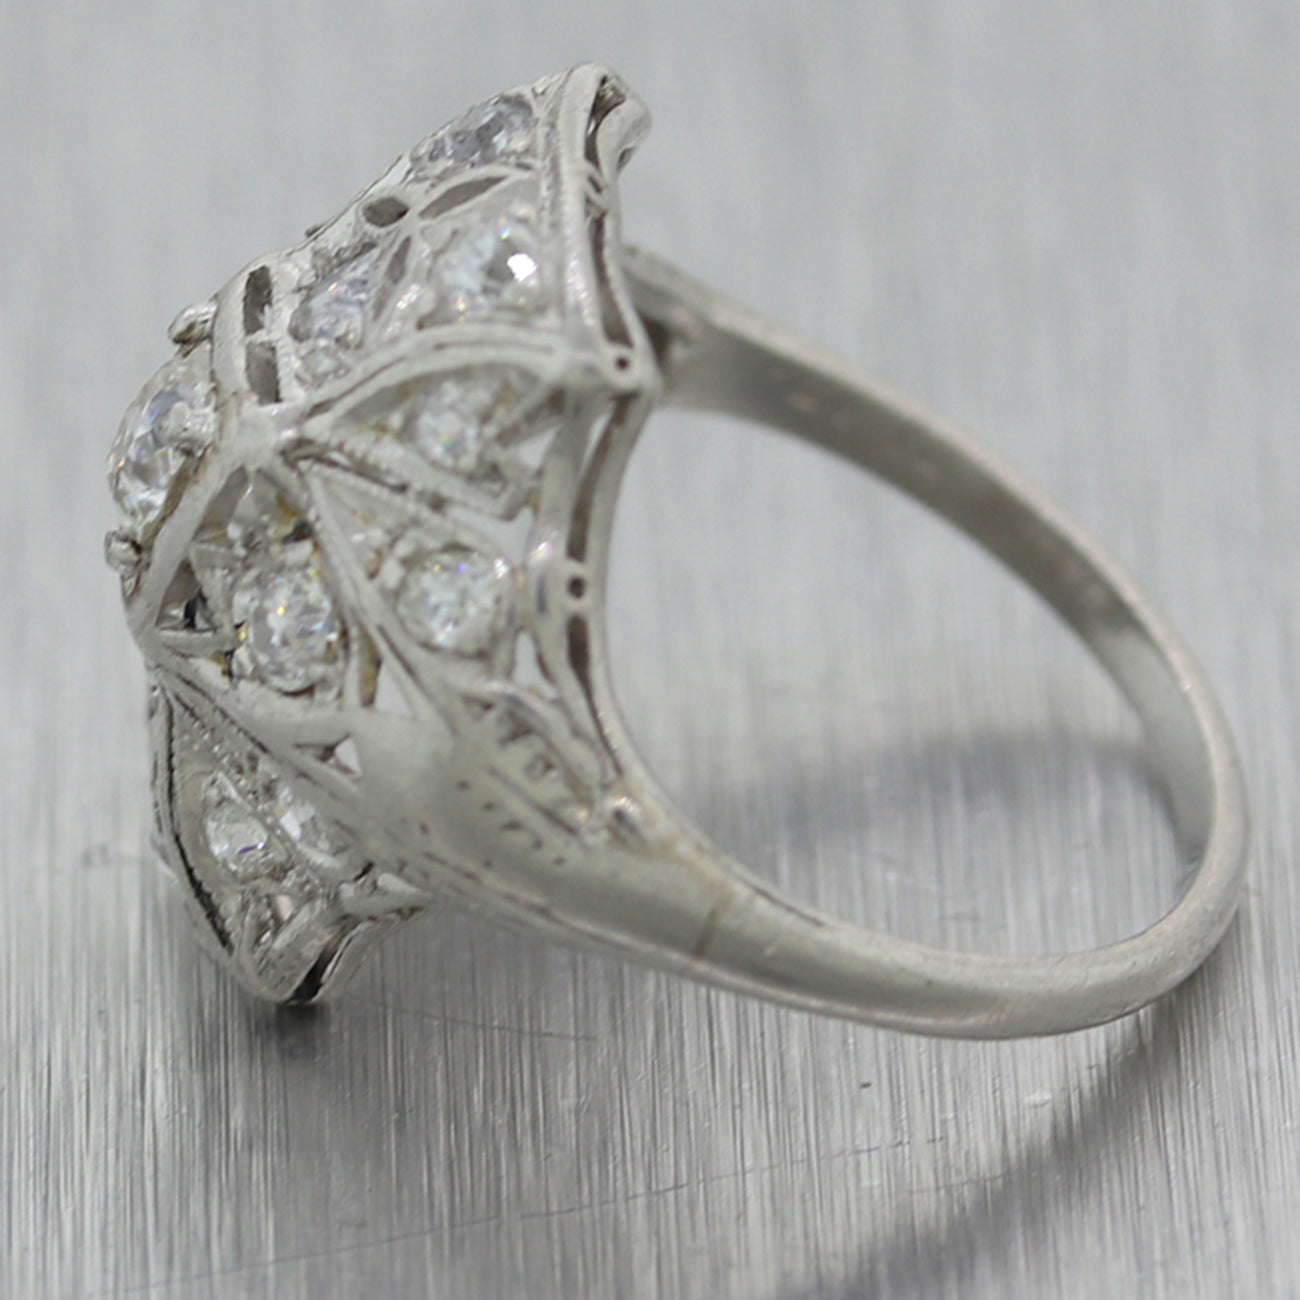 1930's Antique Art Deco Platinum 1ctw Diamond Cocktail Ring